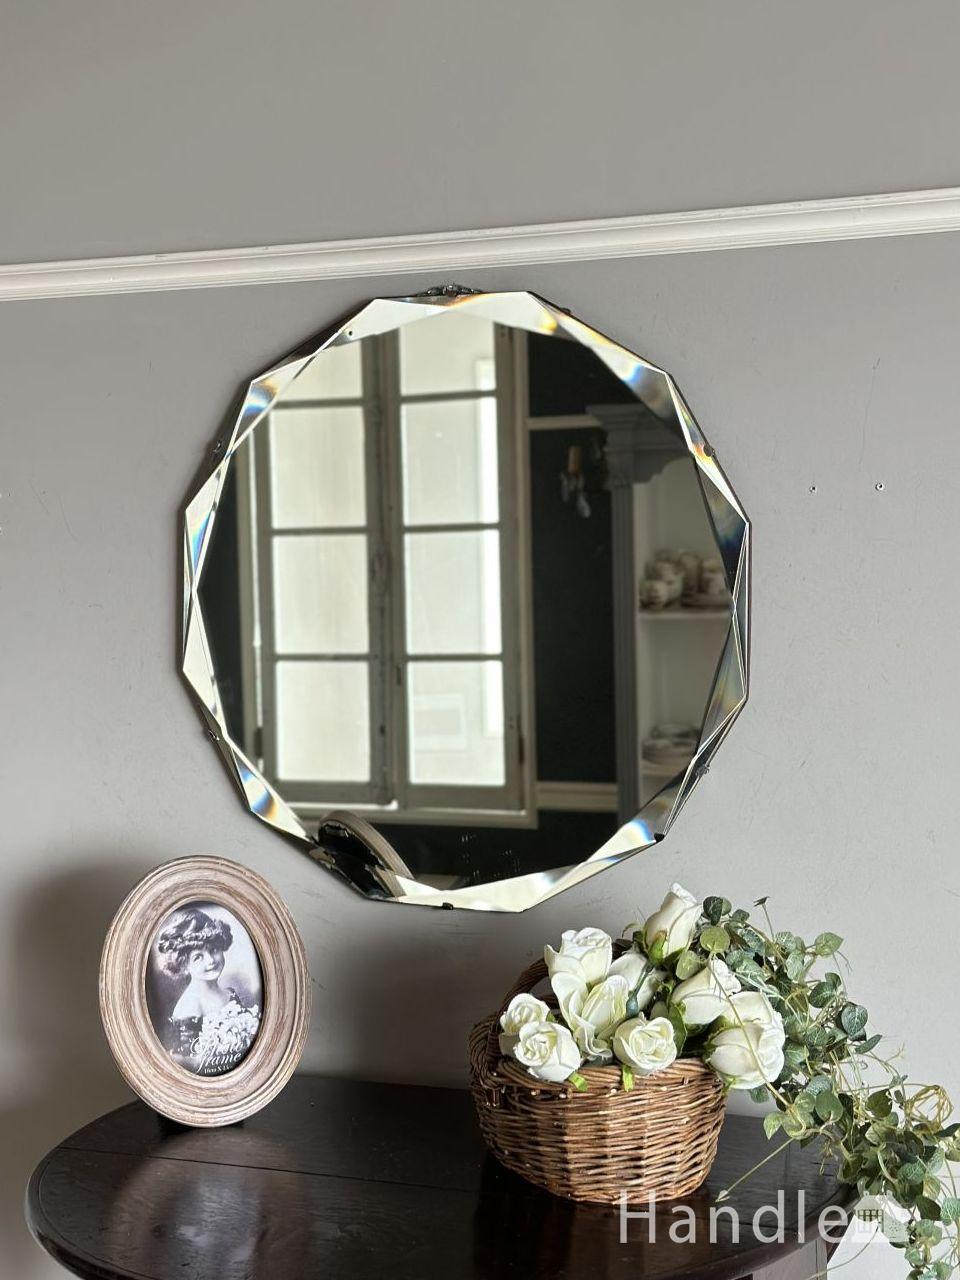 イギリスのアンティーク雑貨、丸い形の縁取りが輝く壁付けの鏡(k-4717 